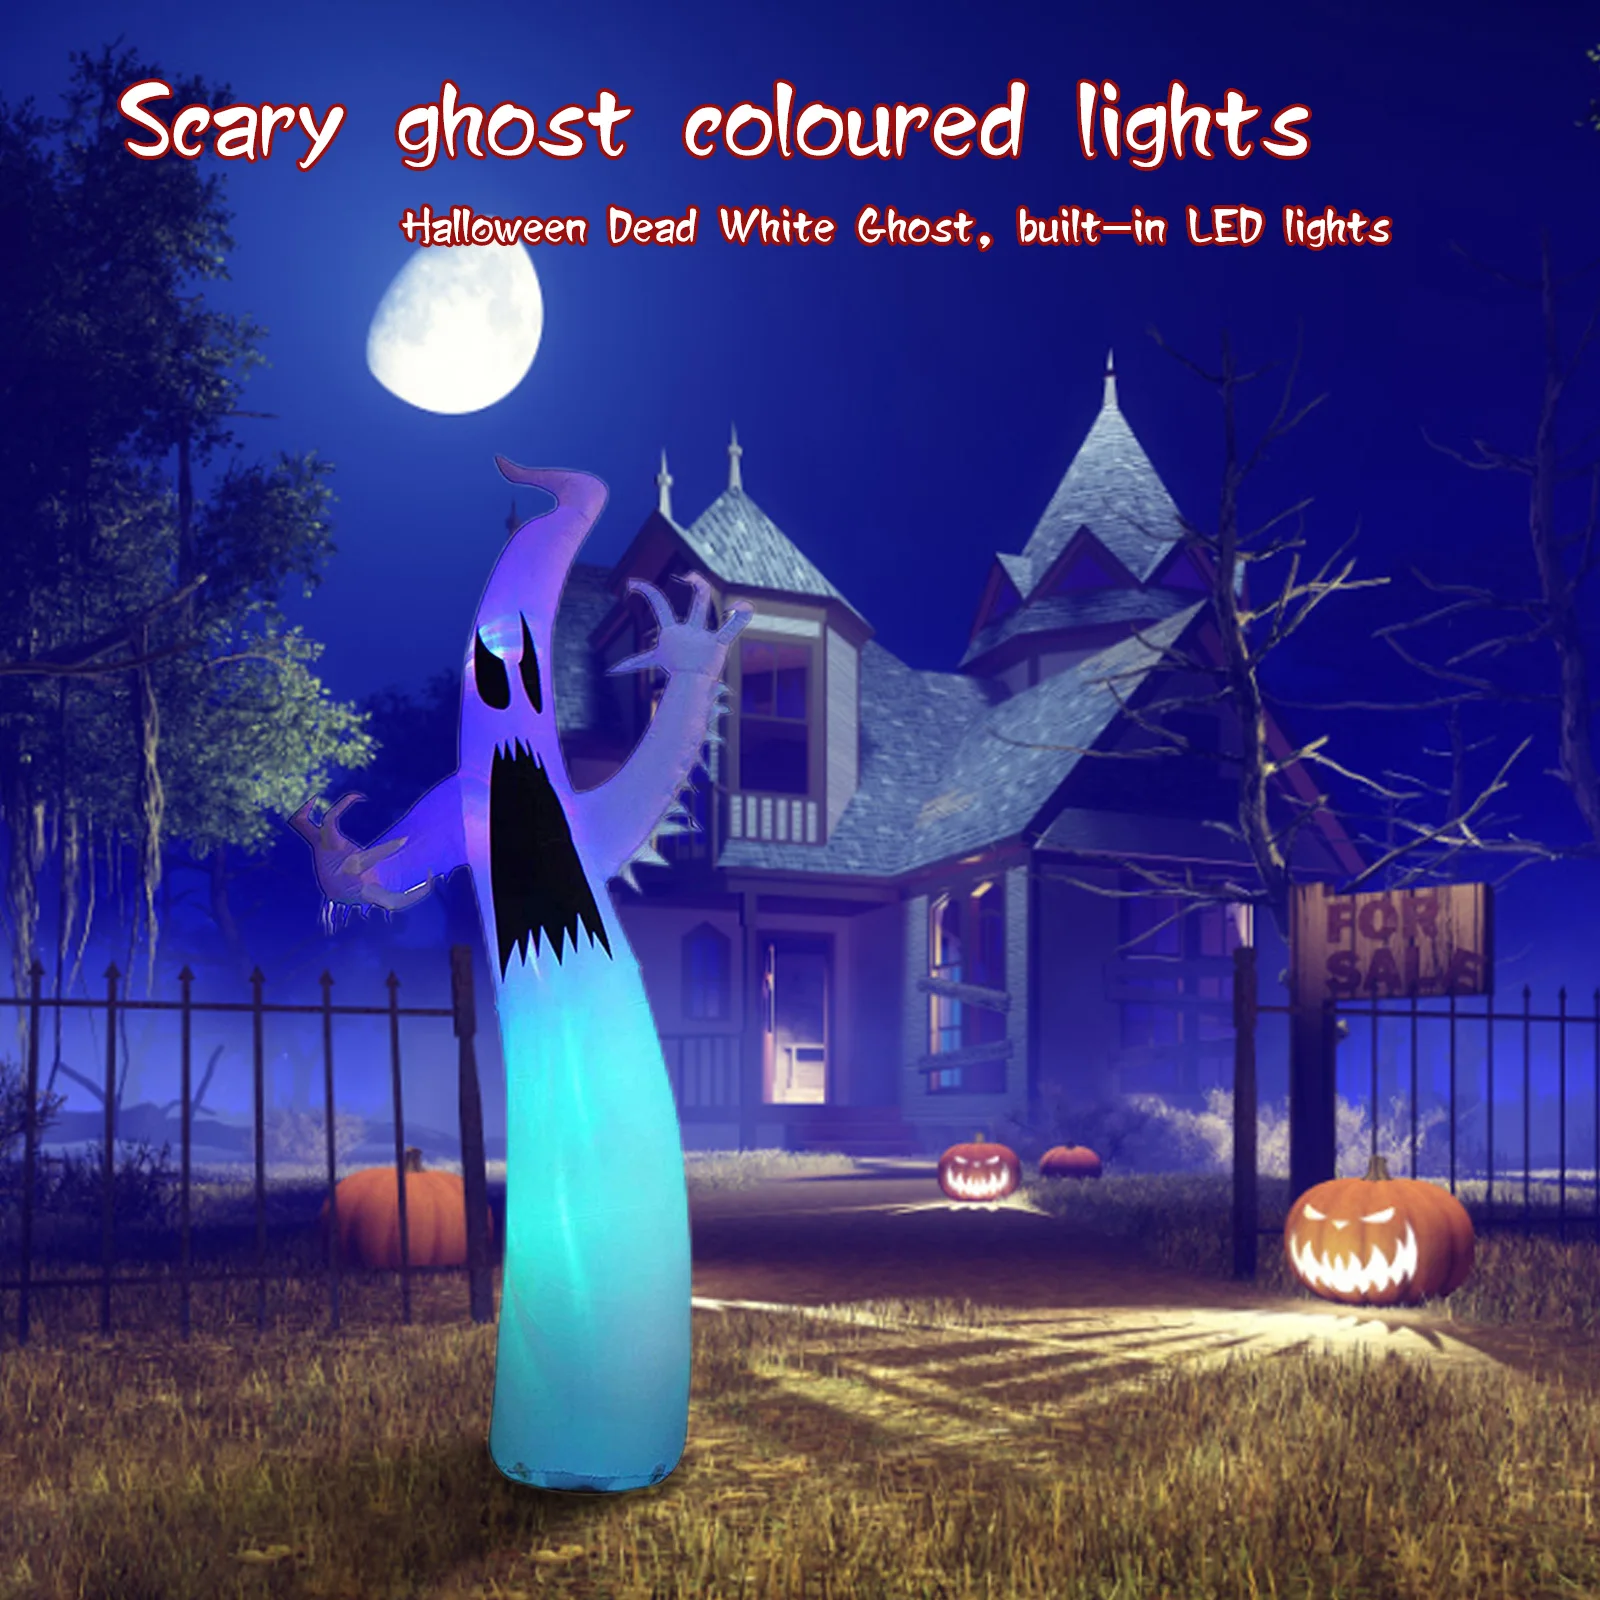 

Надувной призрак на Хэллоуин со встроенным светодиодом, надувной страшный призрак со светодиодами для помещений и улицы со светодиодными ф...